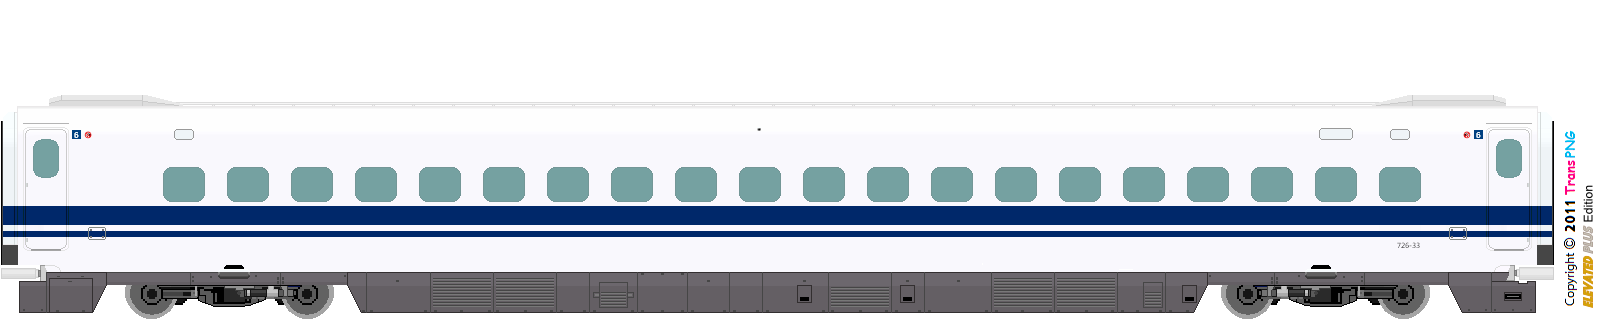 9010 - [9010] Central Japan Railway 52287846344_724b366774_o